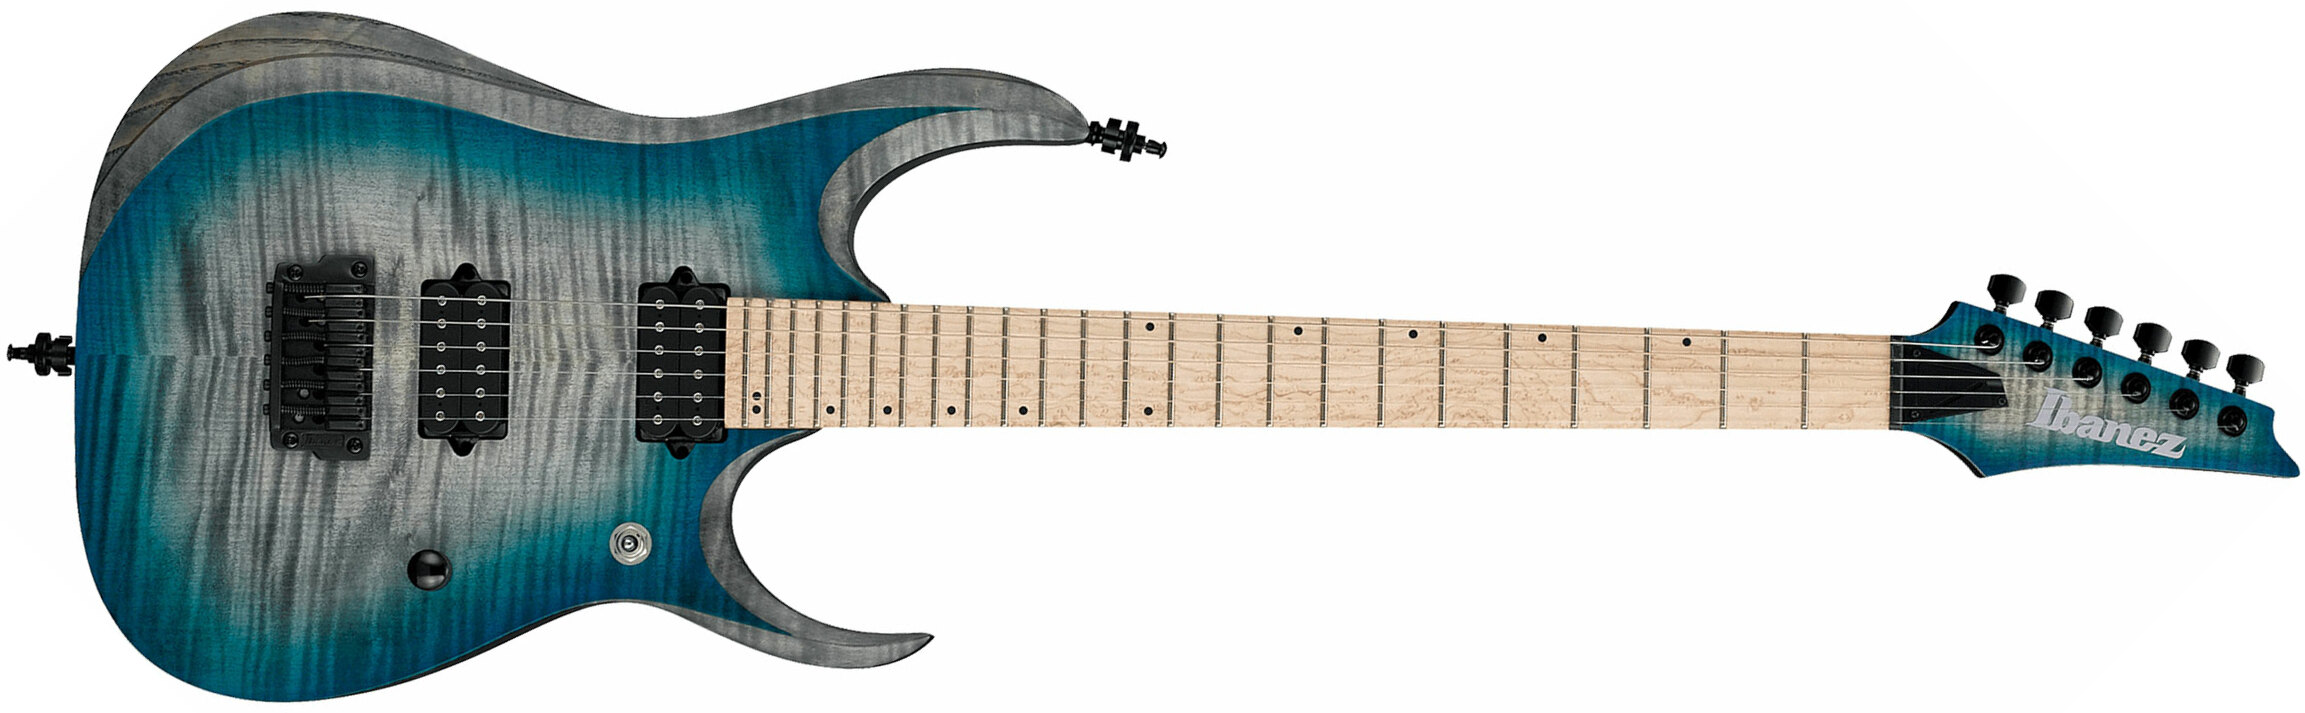 Ibanez Rgd61al Ssb Axion Label Hh Dimarzio Ht Mn - Stained Sapphire Blue Burst - Guitare Électrique Double Cut - Main picture